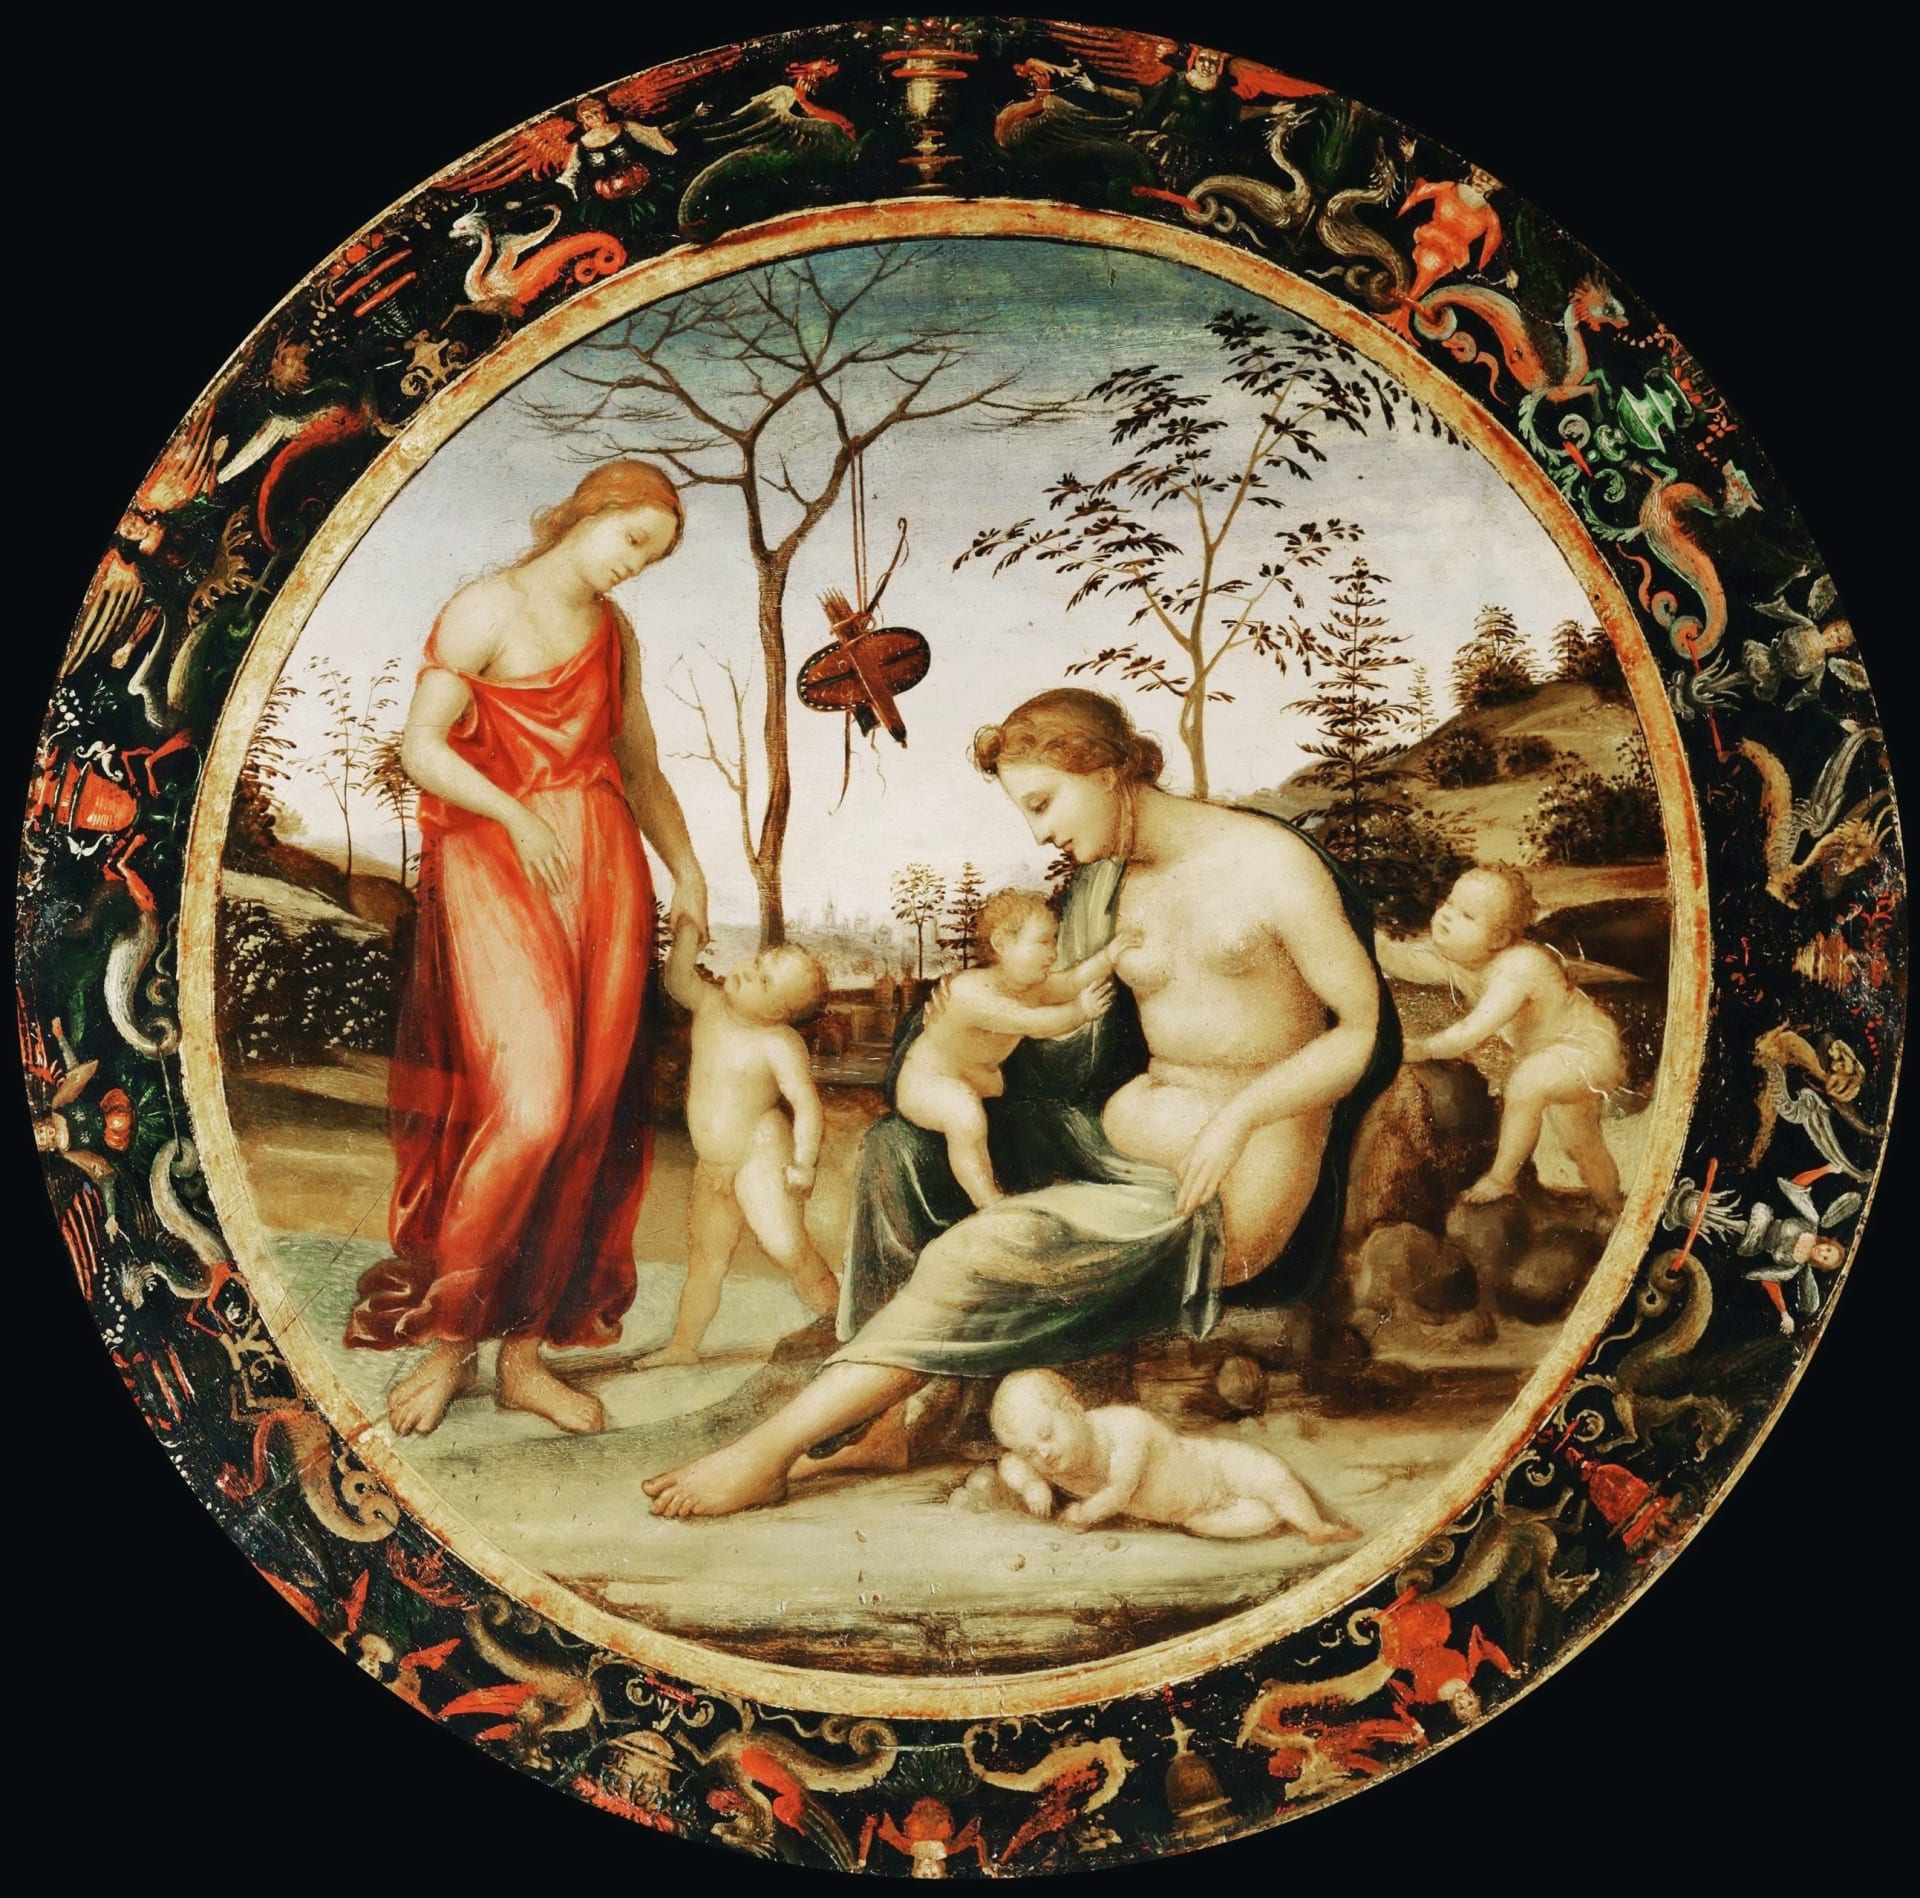 Venuše pozemská s Erósem  a Venuše nebeská s Anterem a dvěma kupidy - autorem této alegorie je Giovanni Antonio Bazzi (1508)